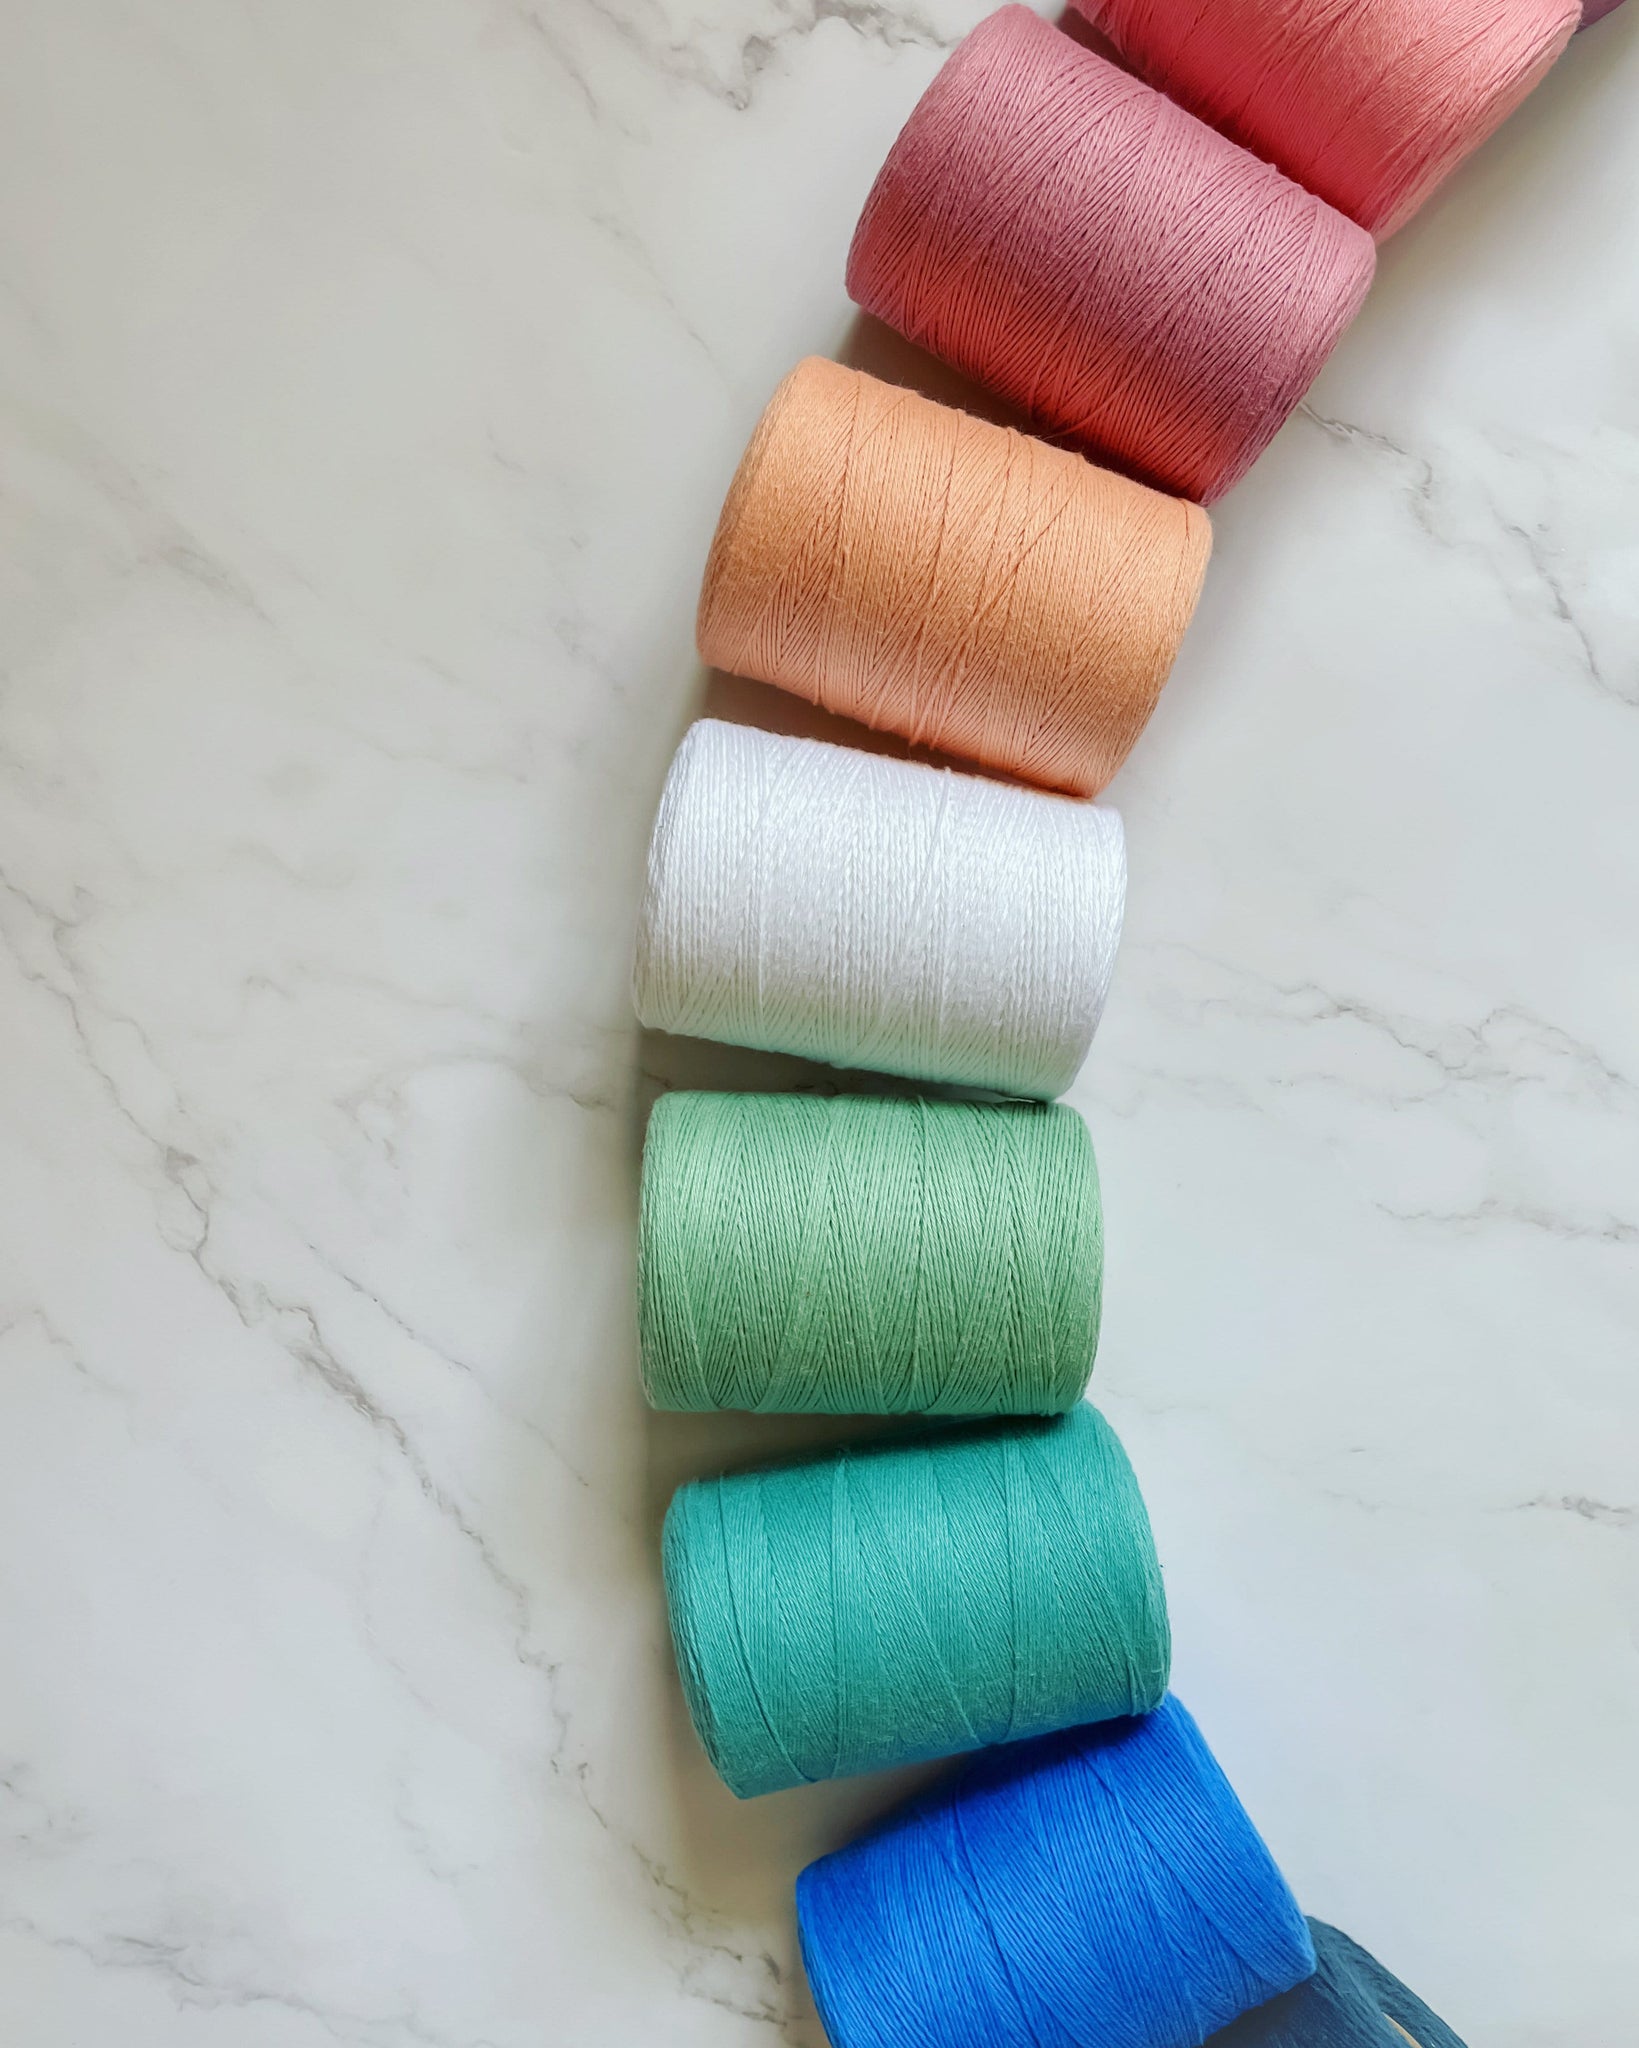 Mainstays 100% Cotton Yarn - Soft Silver Gray - 3.5oz 180yds - 4